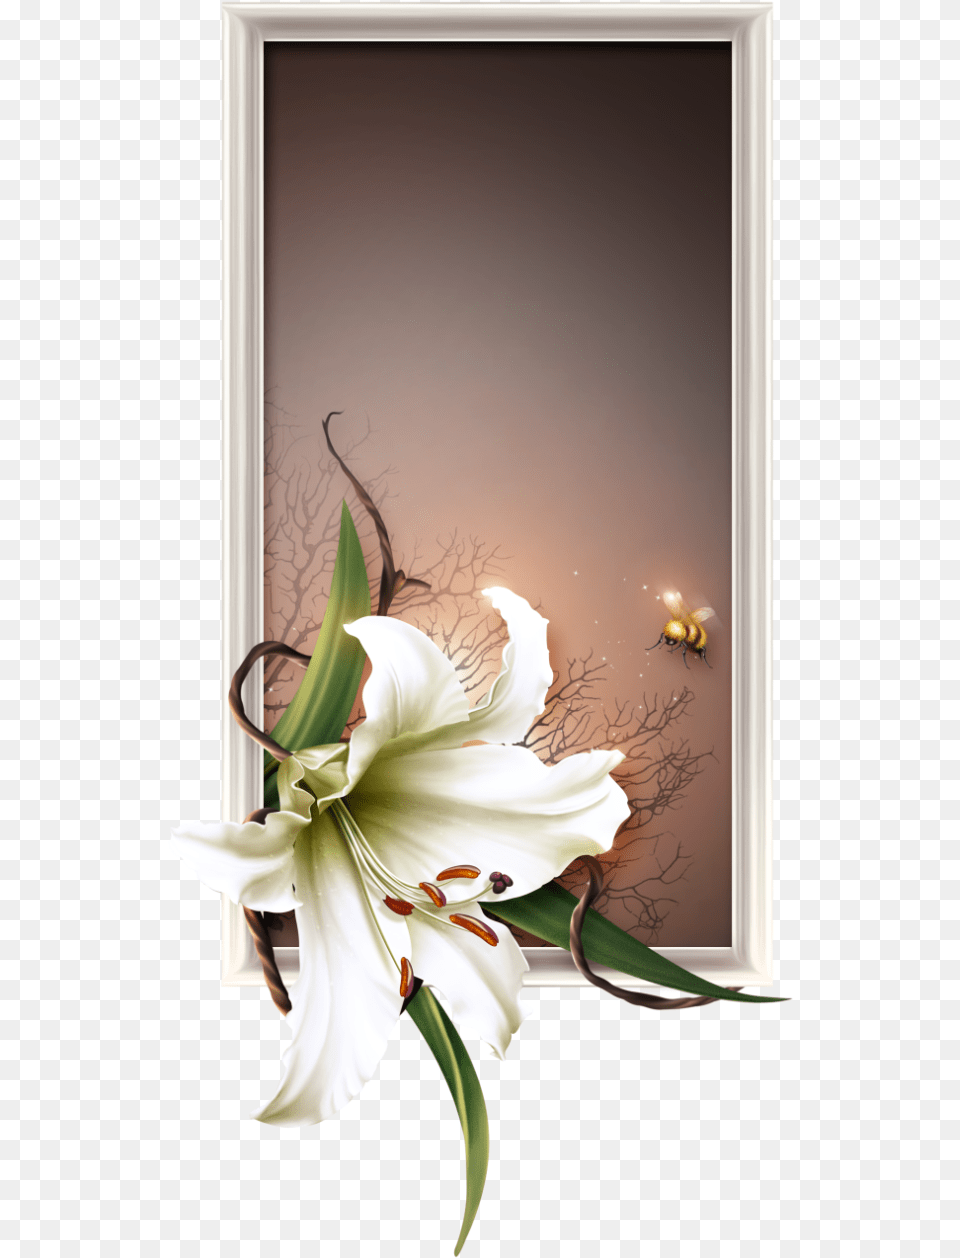 Lily, Flower, Flower Arrangement, Plant, Flower Bouquet Png Image